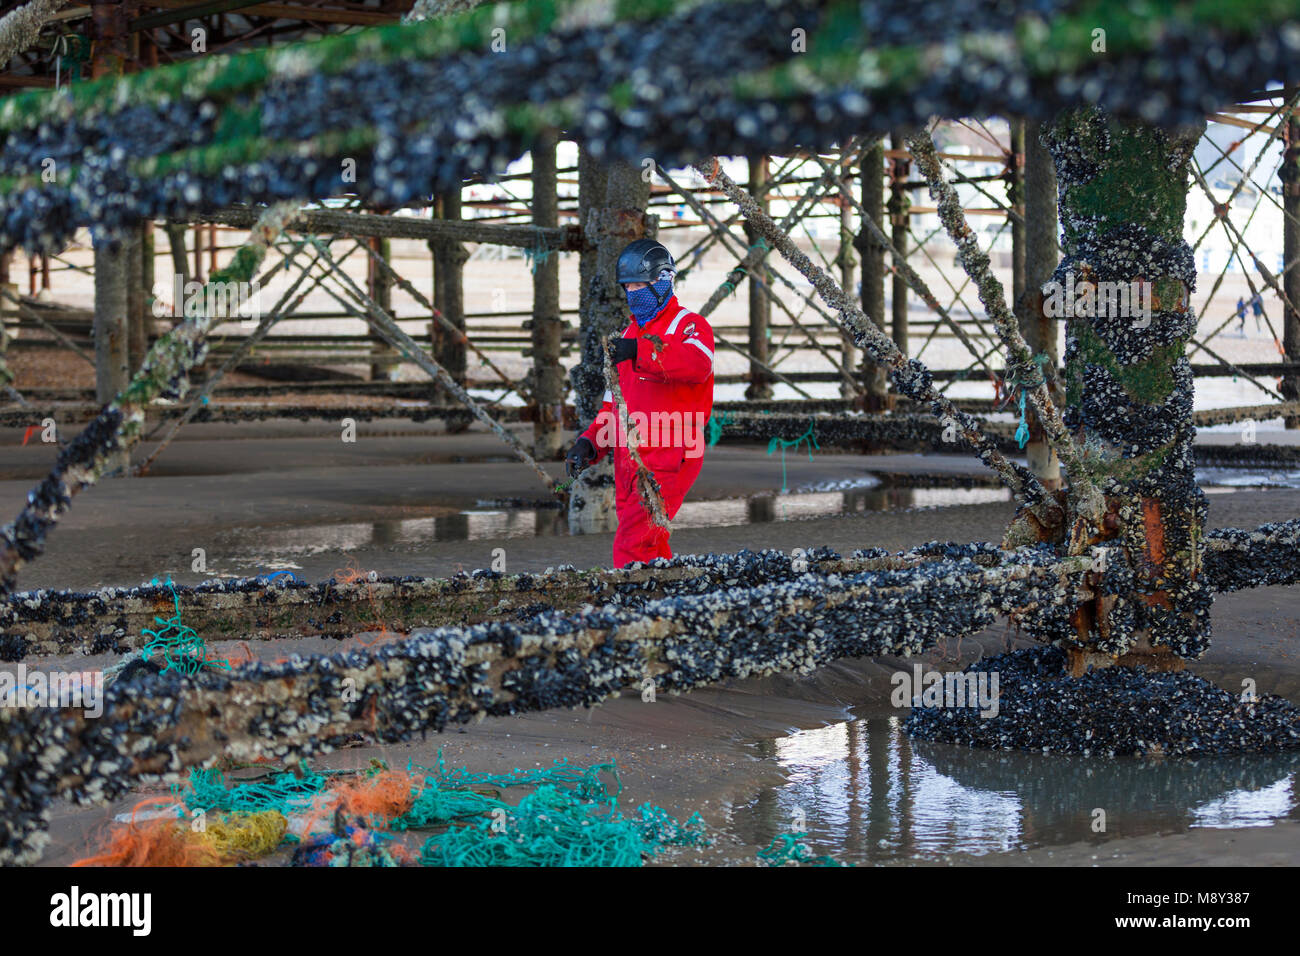 Inquinamento Ambientale di hastings pier, un uomo è visto salendo i pilastri del molo al fine di pulire tutte le tracce di corda e materie plastiche, Regno Unito Foto Stock